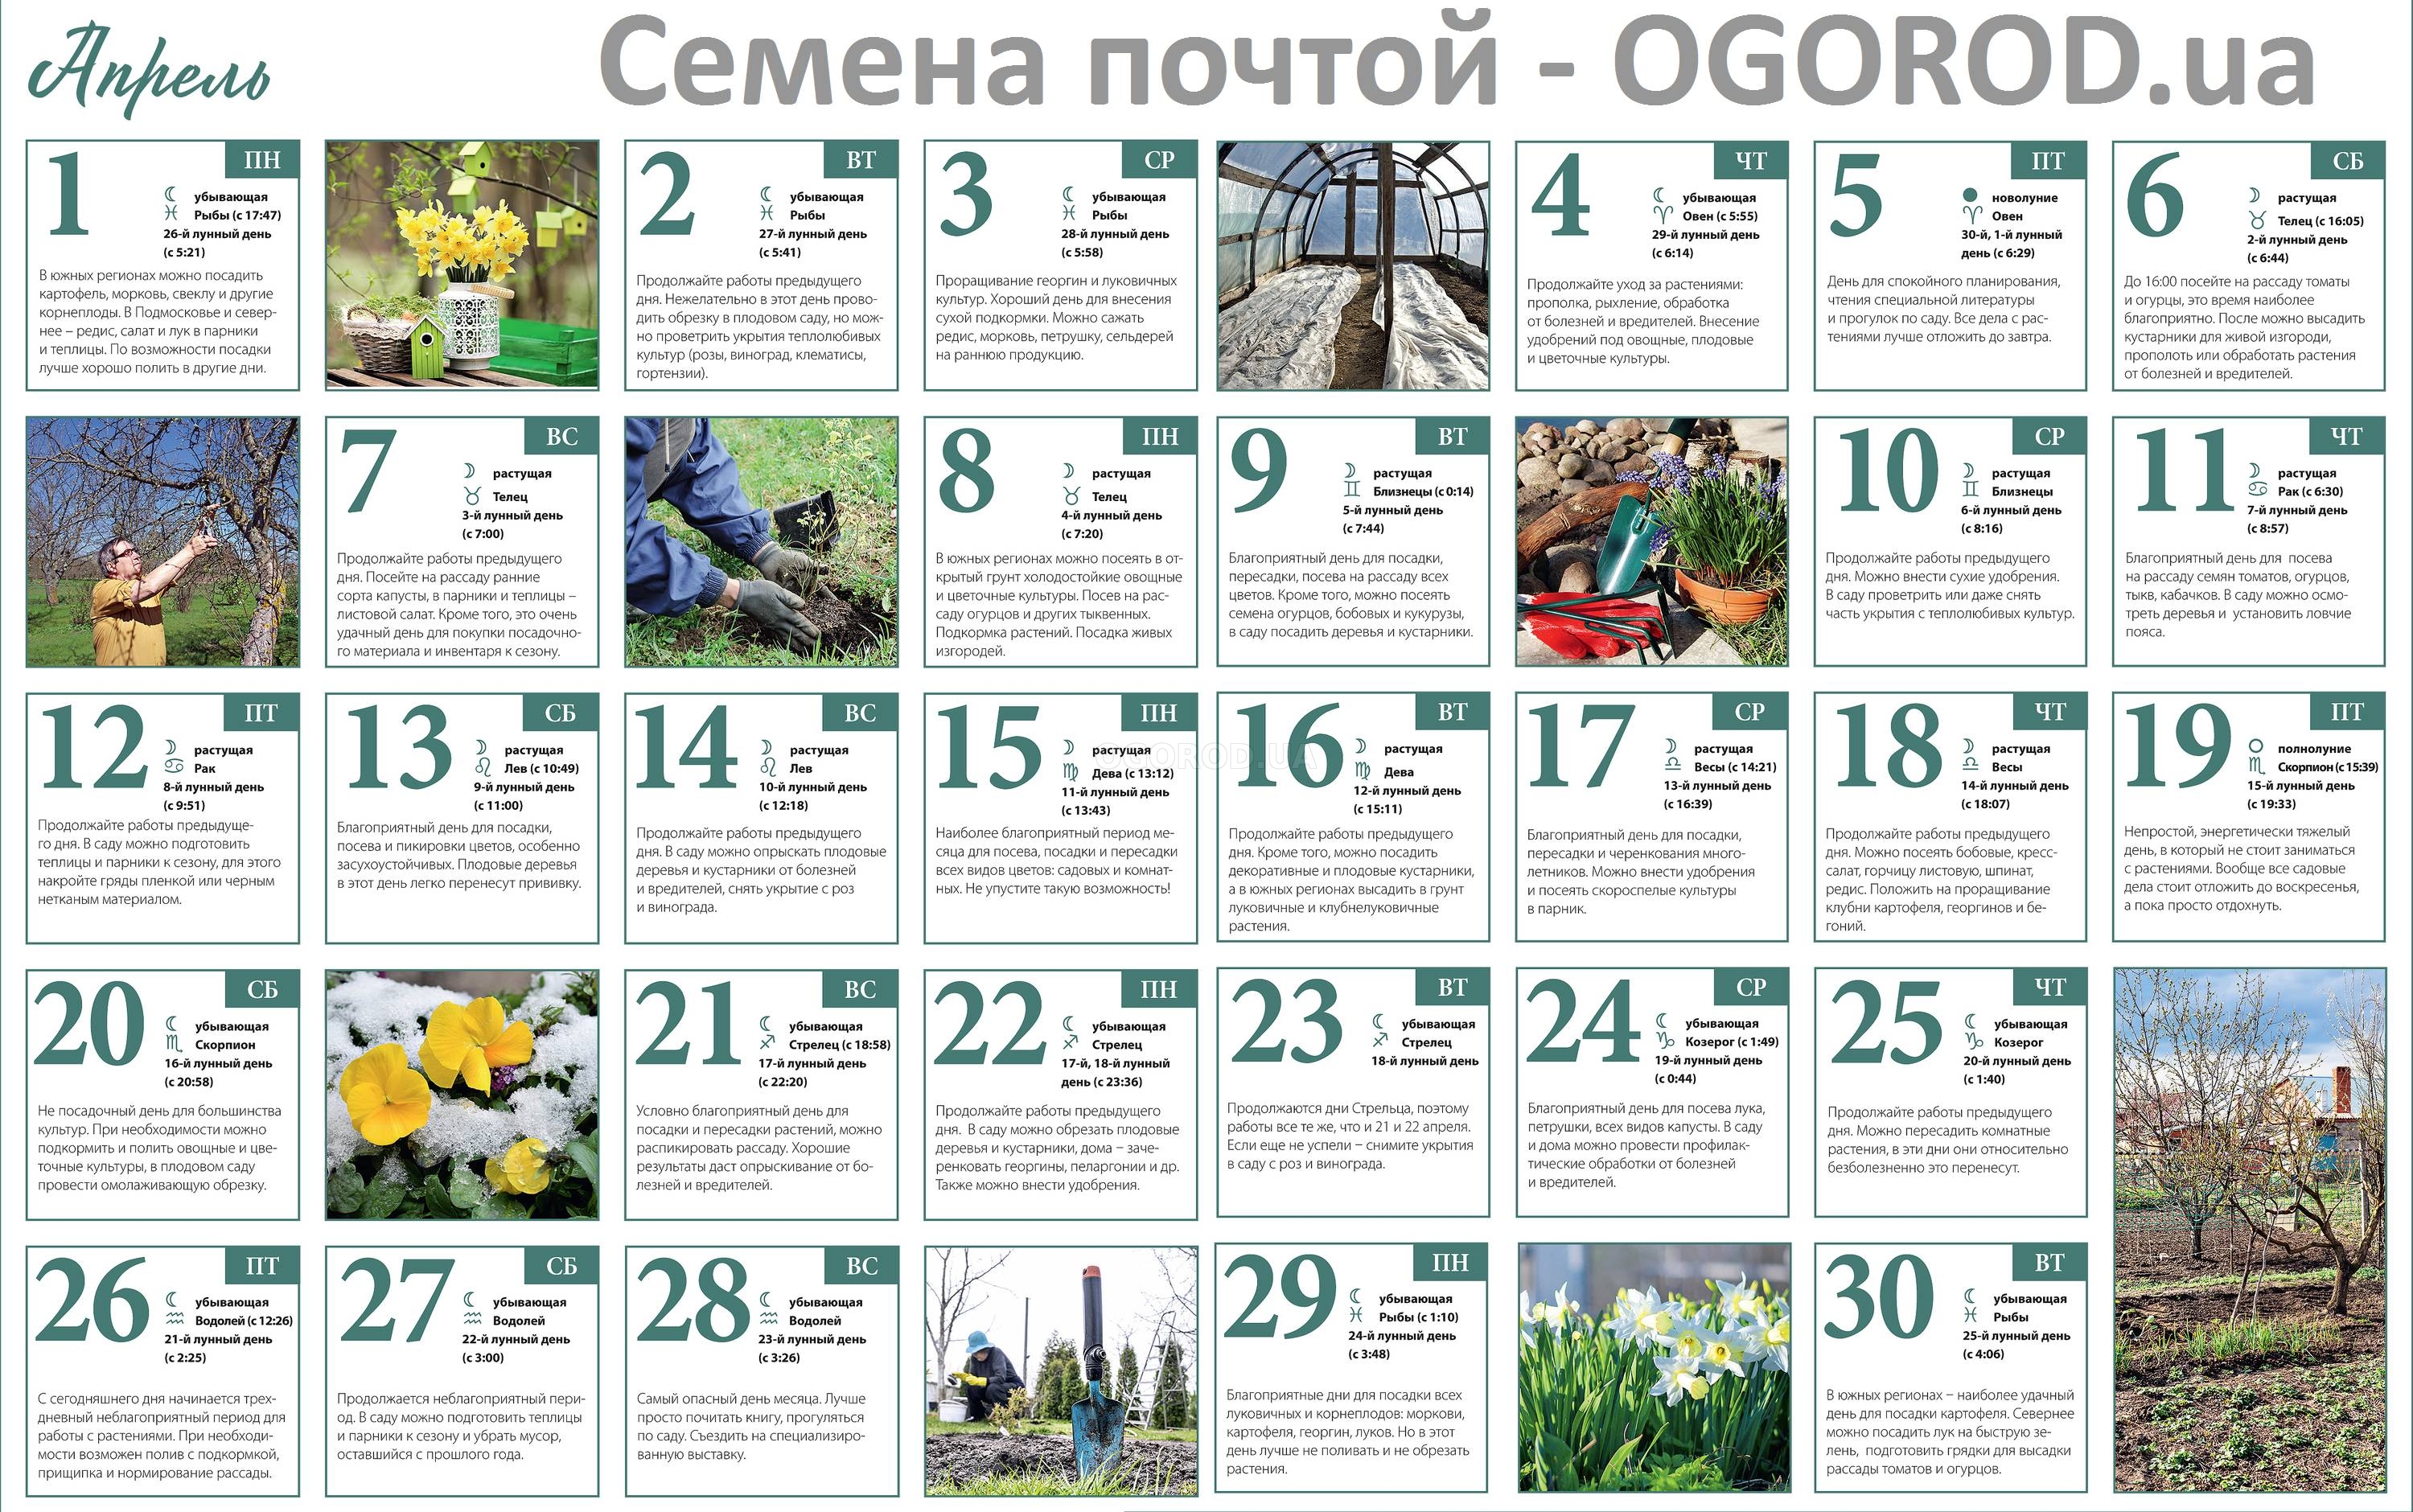 Огородный календарь на апрель 2019